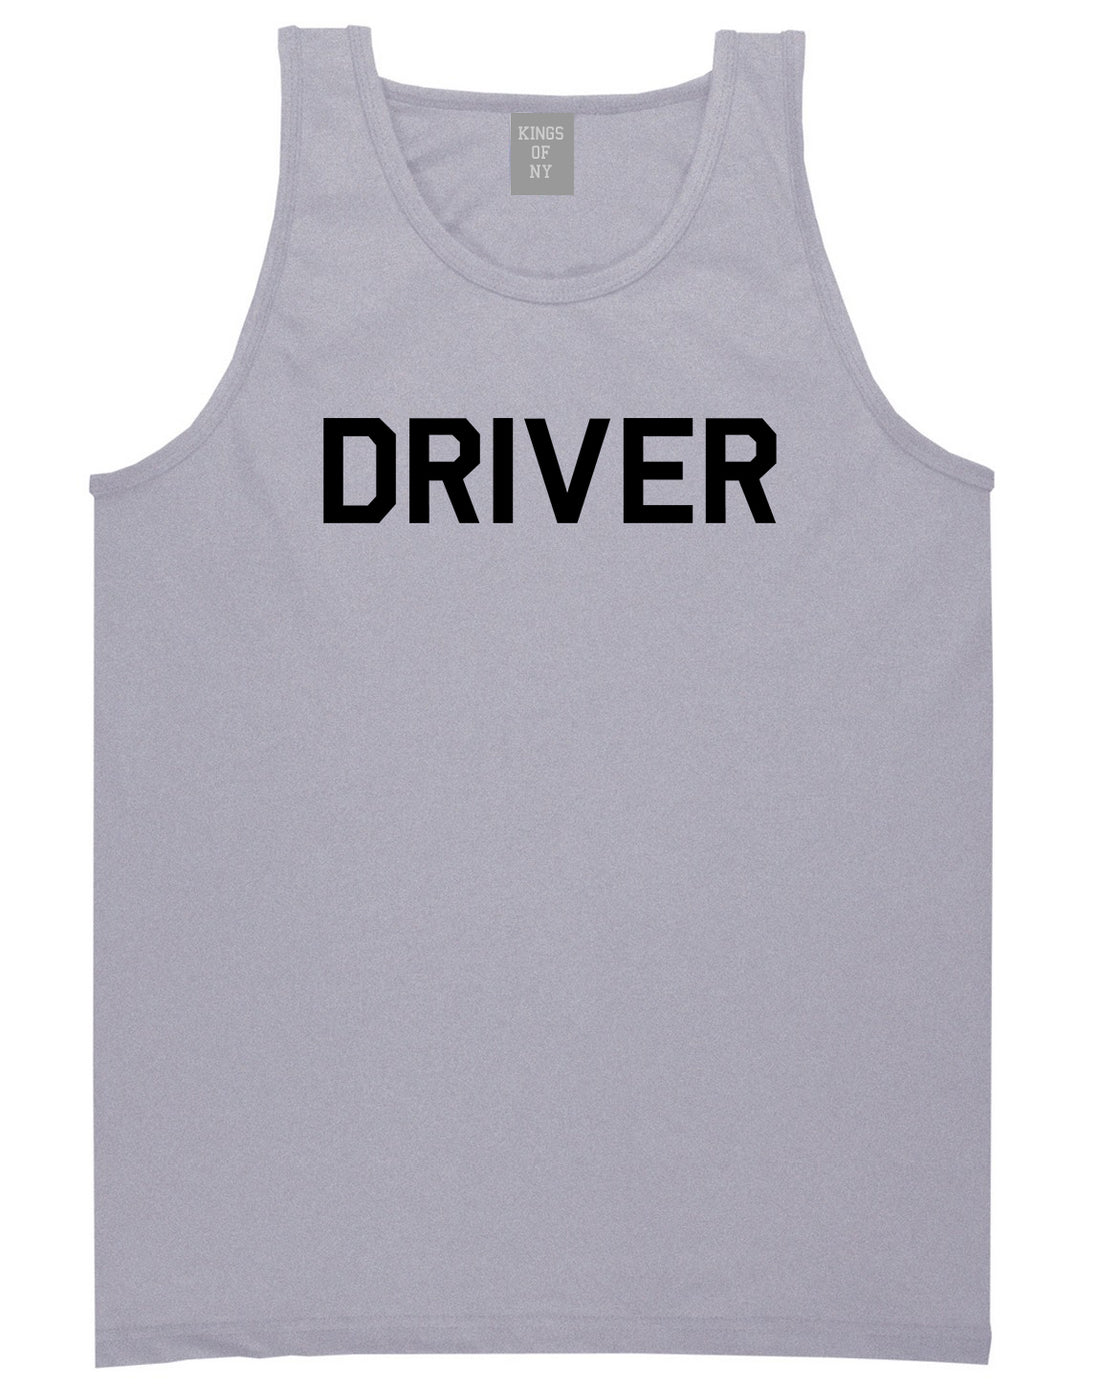 Driver_Drive Mens Grey Tank Top Shirt by Kings Of NY